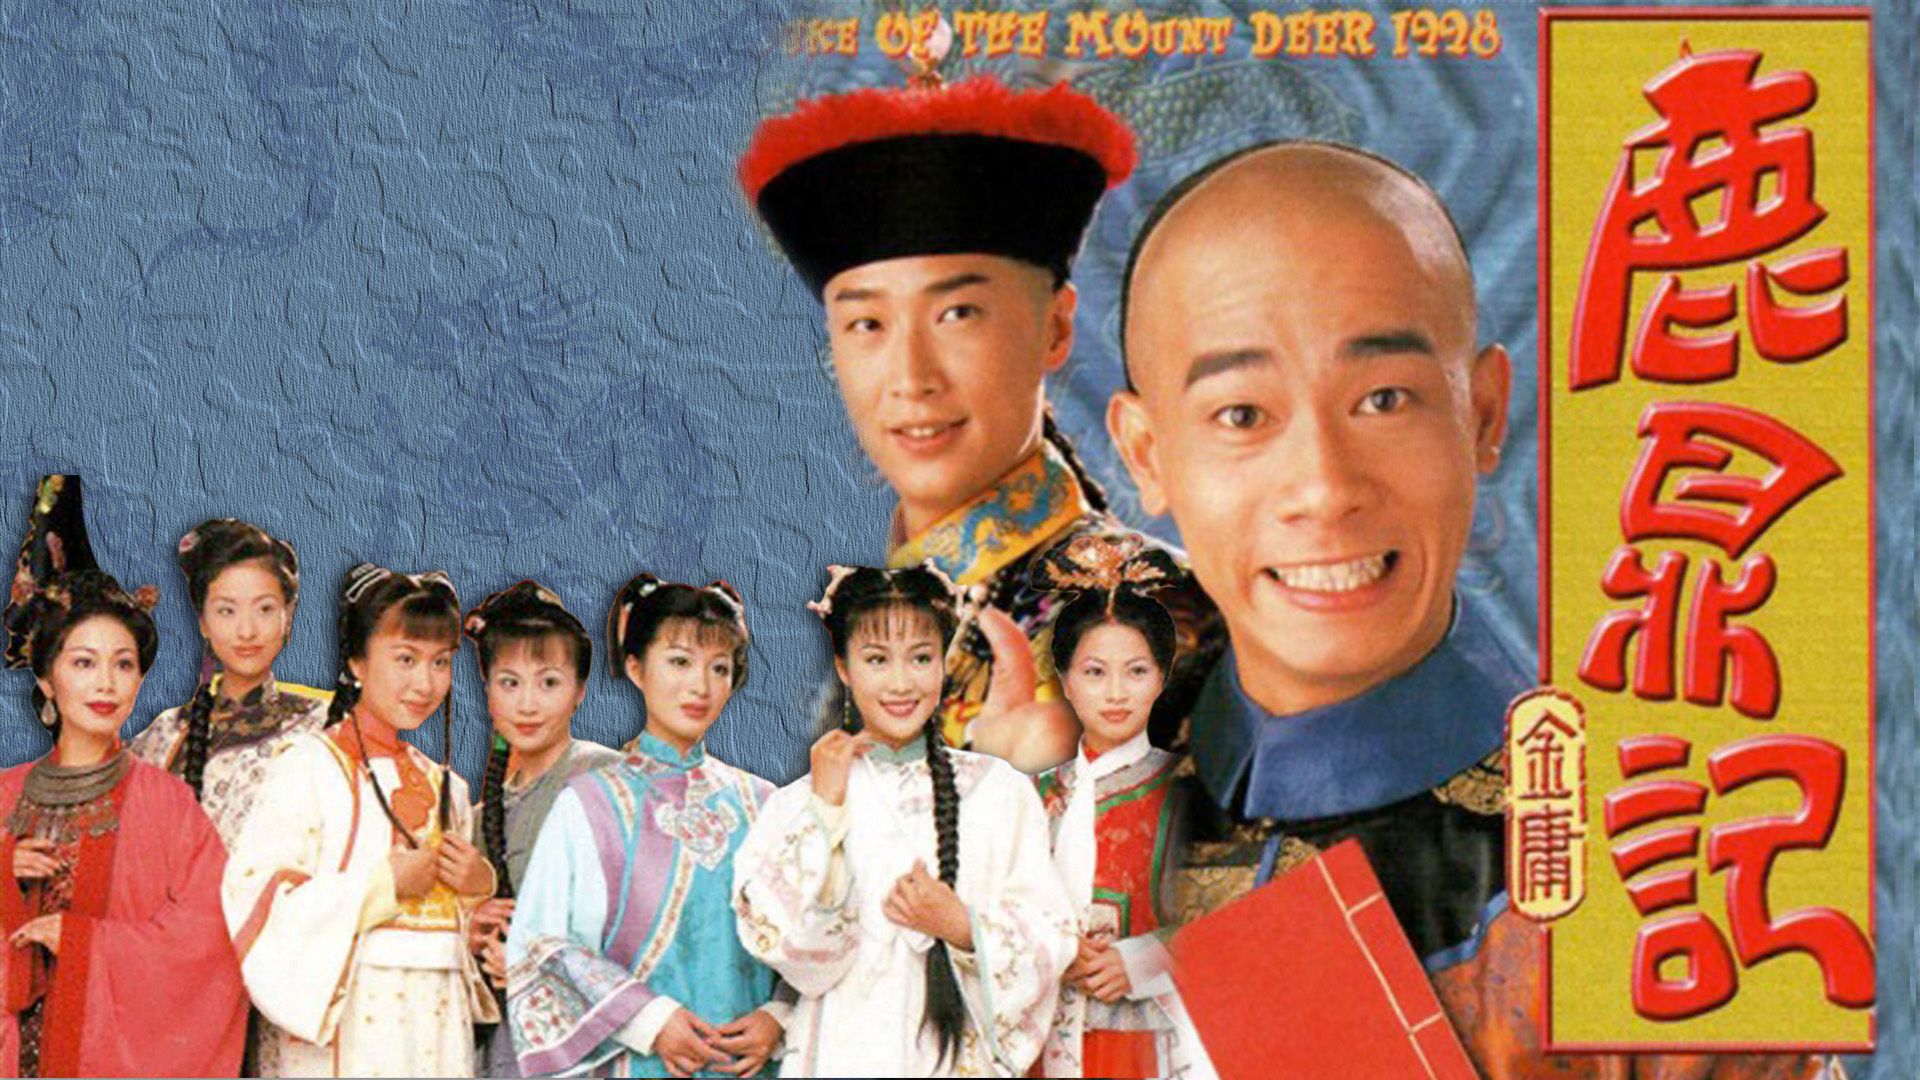 鹿鼎記1998-The Duke of the Mount Deer 1998